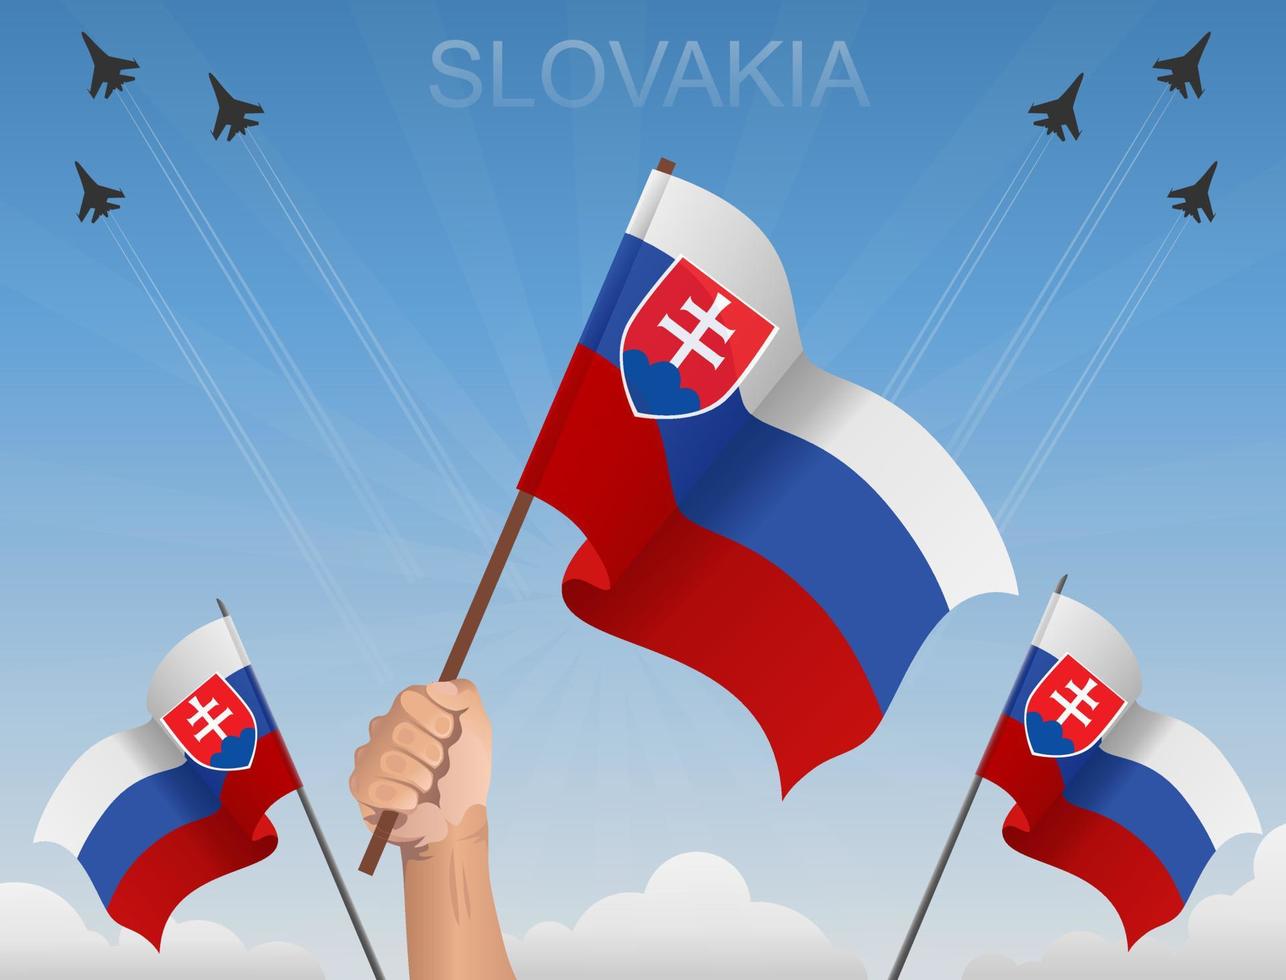 Slovakia flags Flying under the blue sky vector